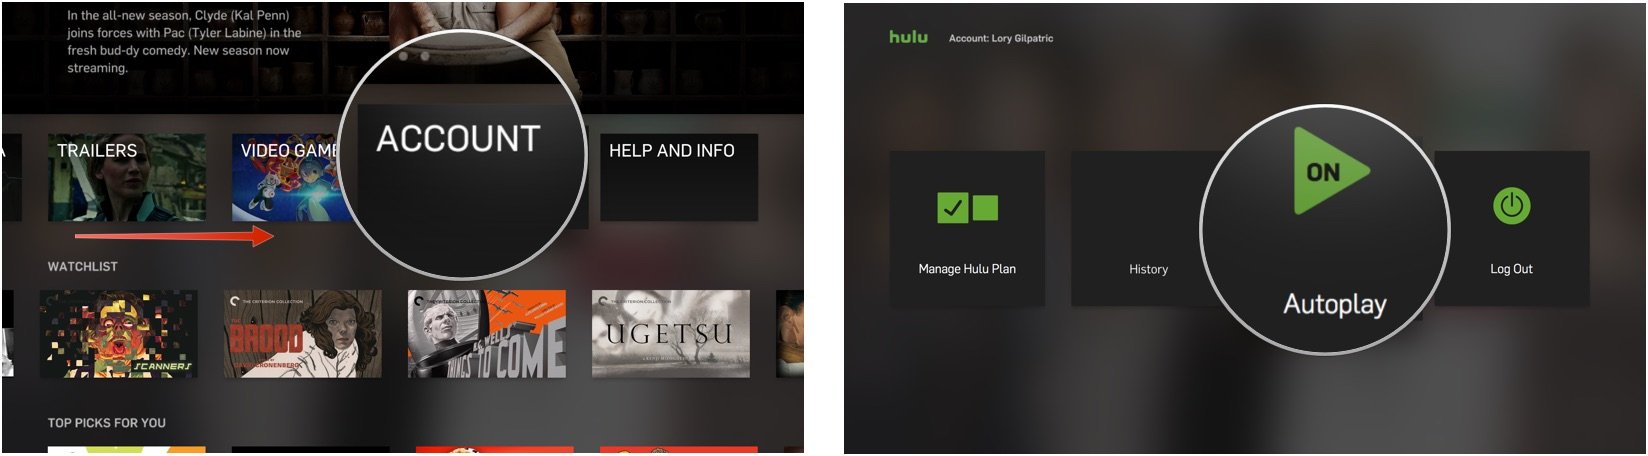 Turning on Autoplay in Hulu on Apple TV